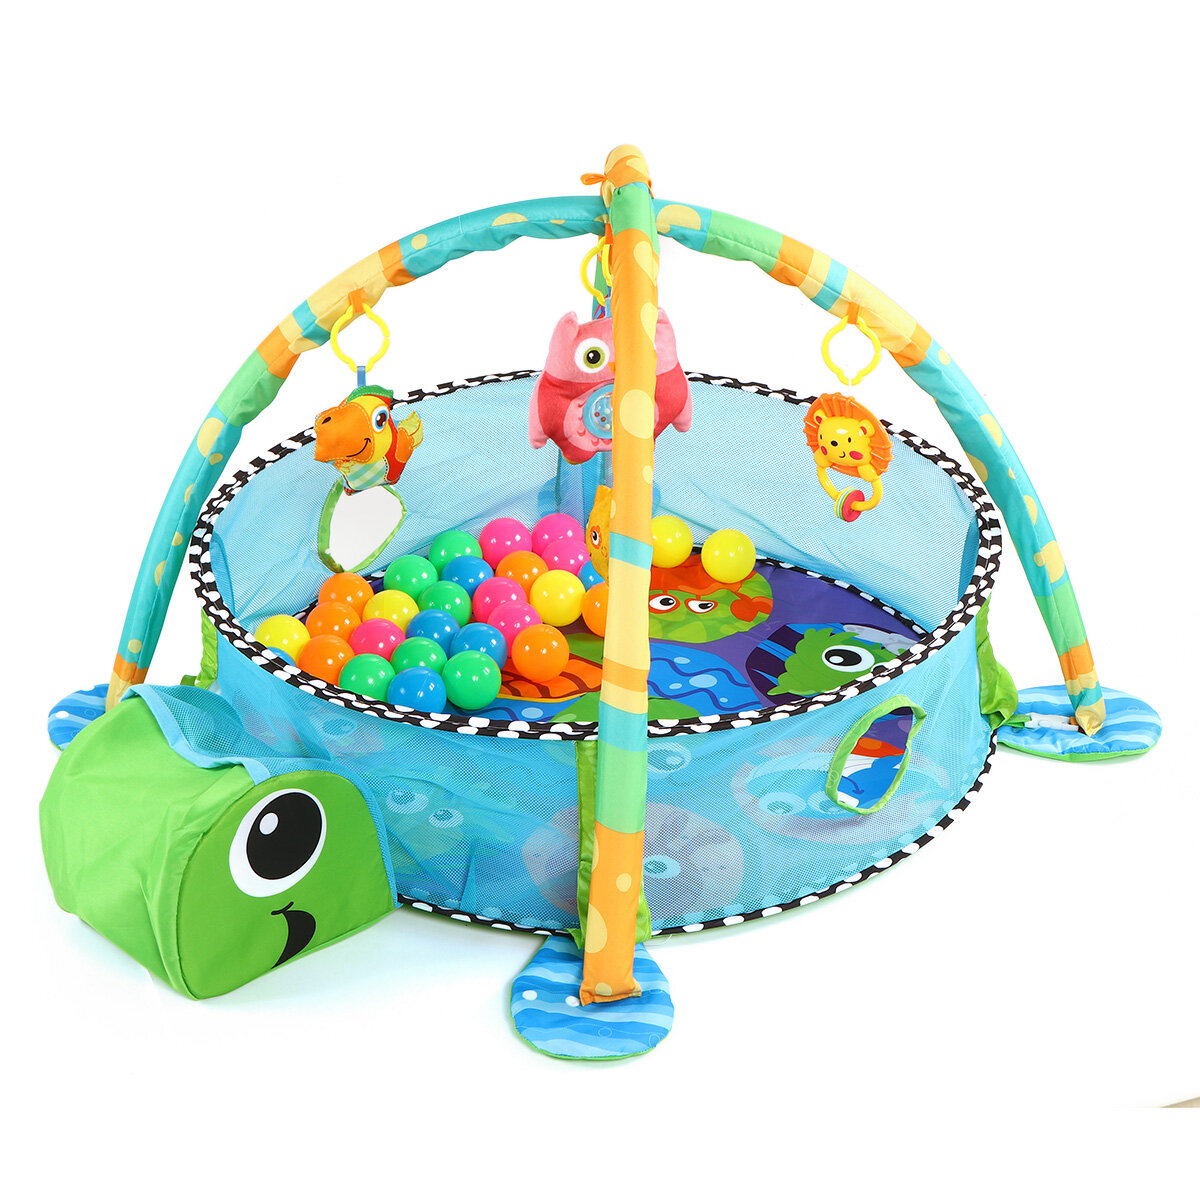 Niedliche Schildkröte Baby 3in1 Spielmatte für Kinder Krabbeln Gymnastikmatte Decke Infant Play Rug Kid Activity Mat Bab